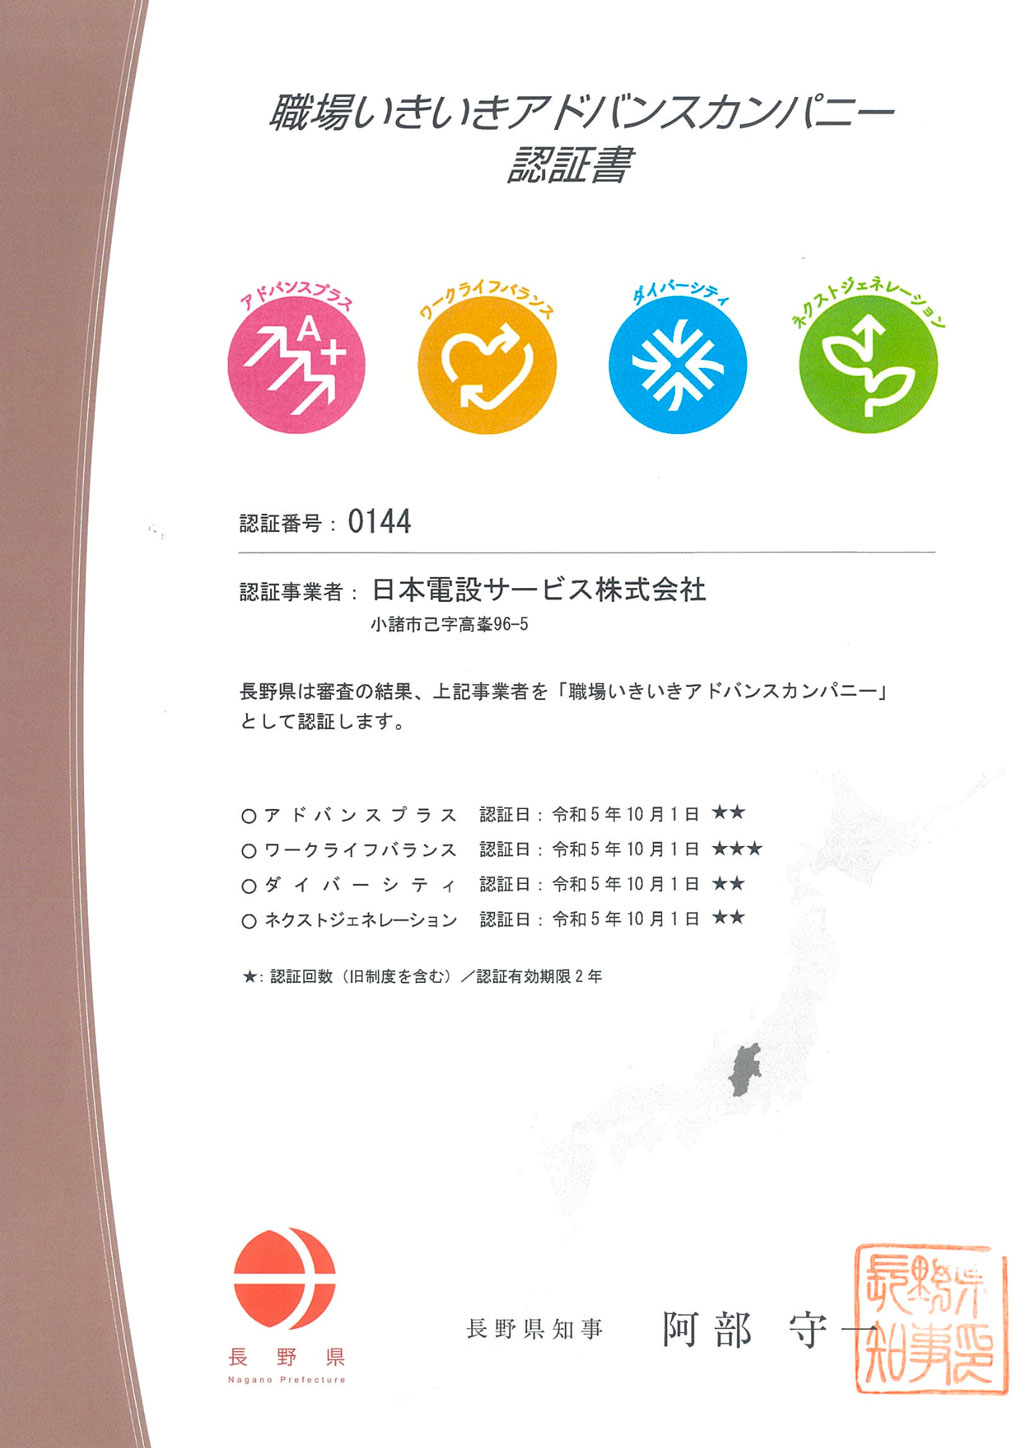 長野県職場いきいきアドバンスカンパニー認証書